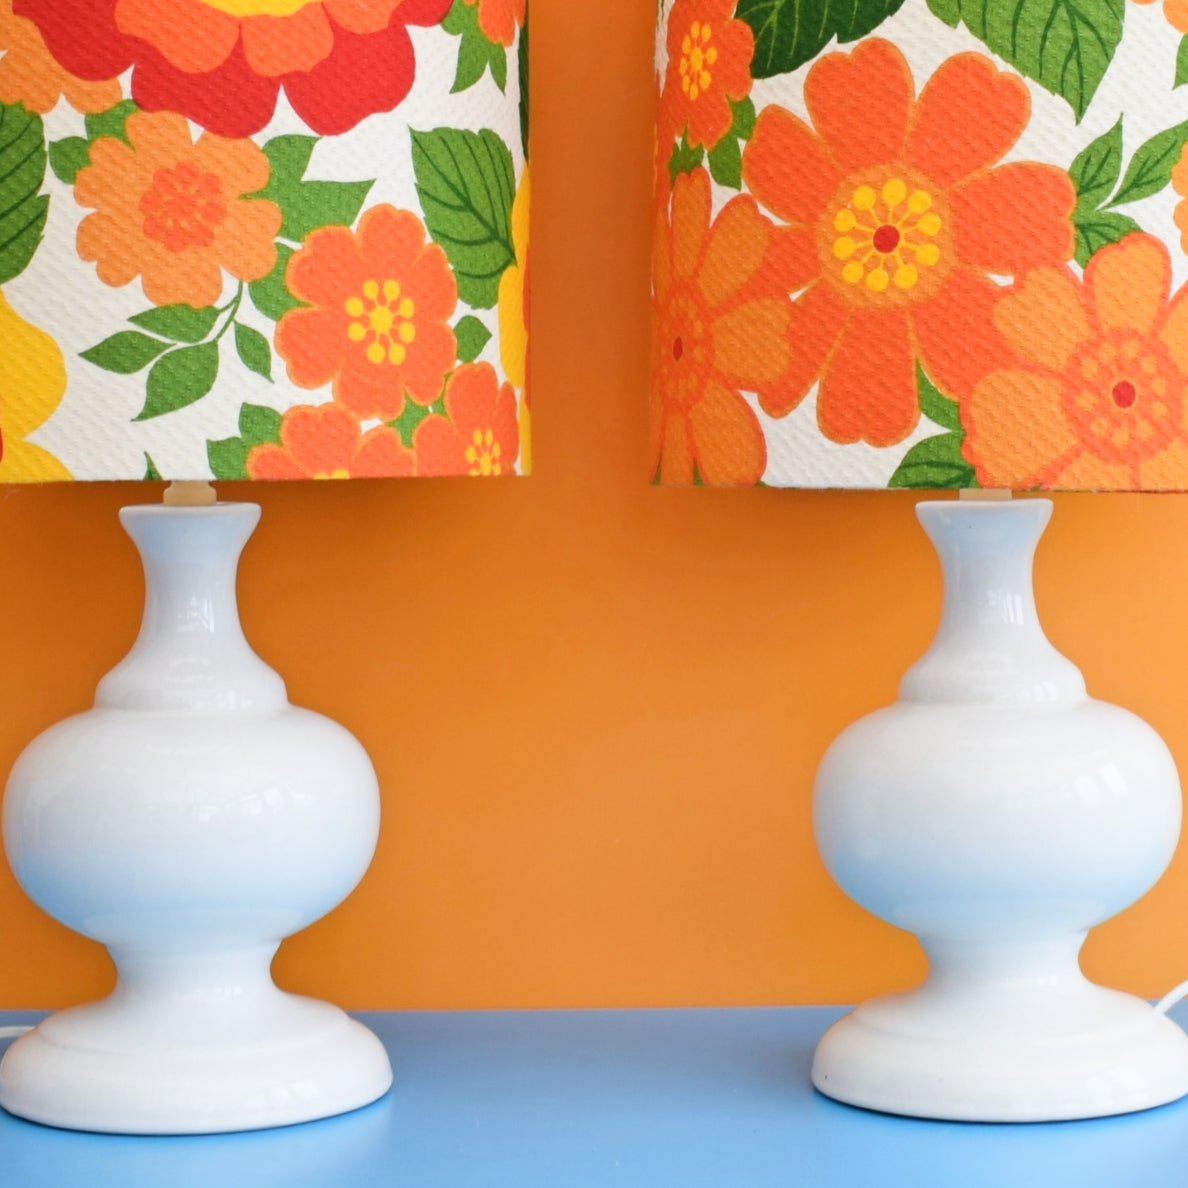 Vintage 1960s Table Lamp - White Ceramic - Flower Power Orange Shade